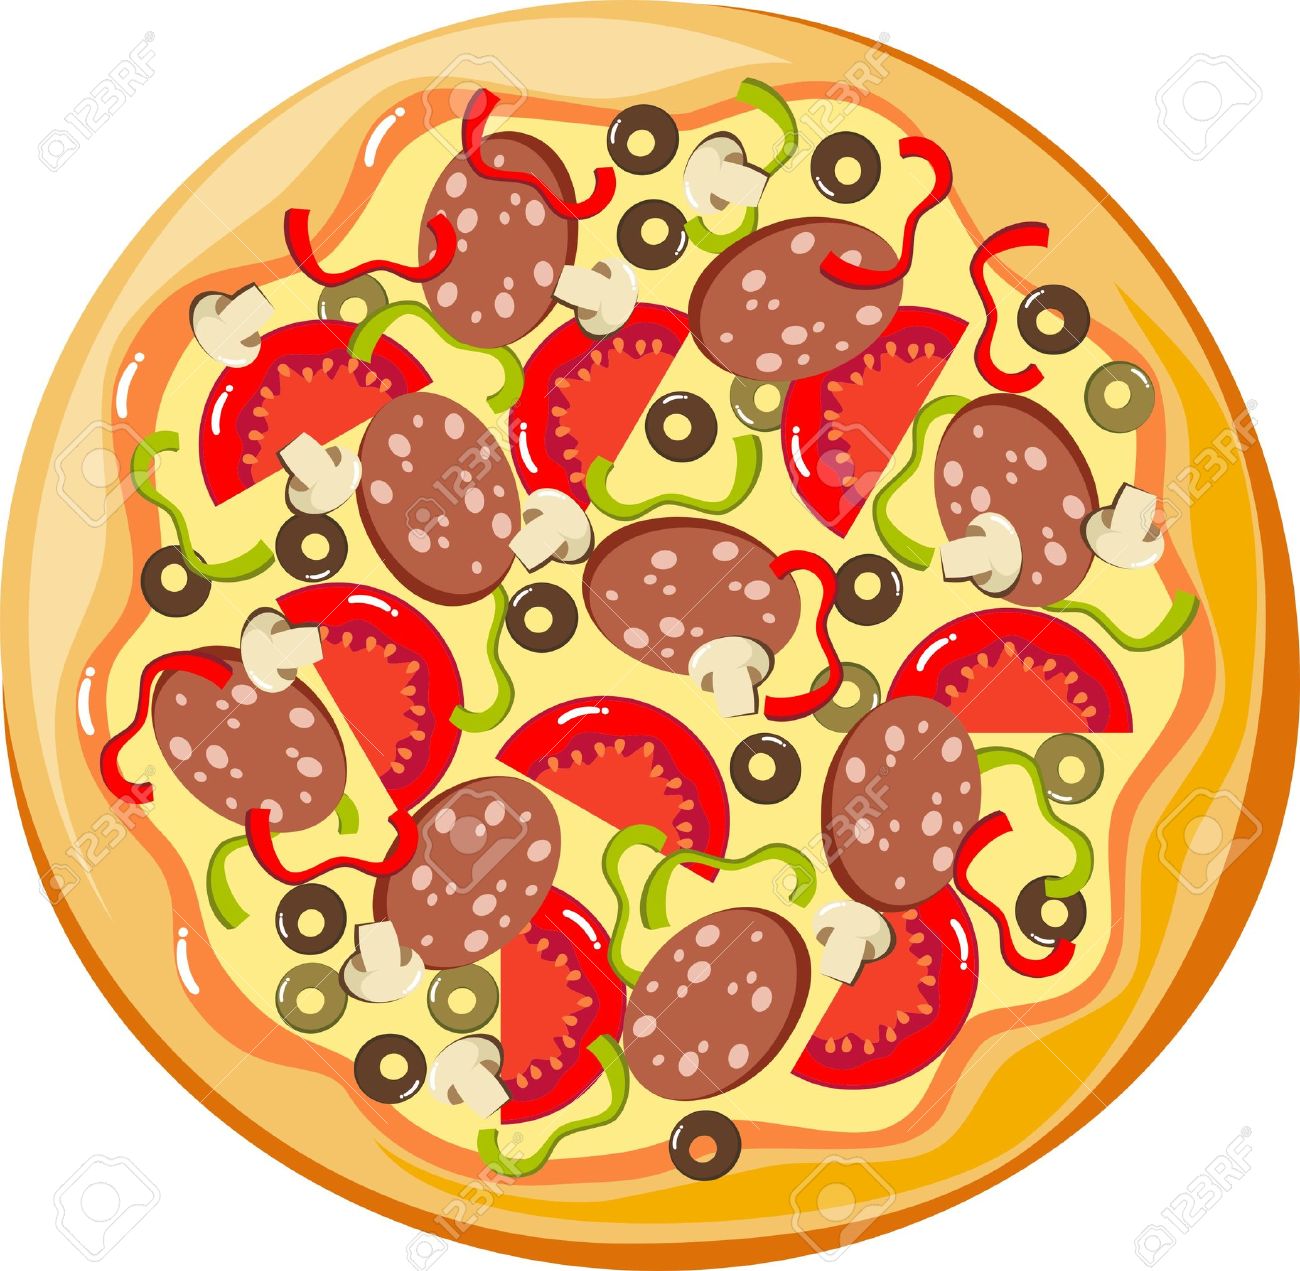 Pizza clip art microsoft free